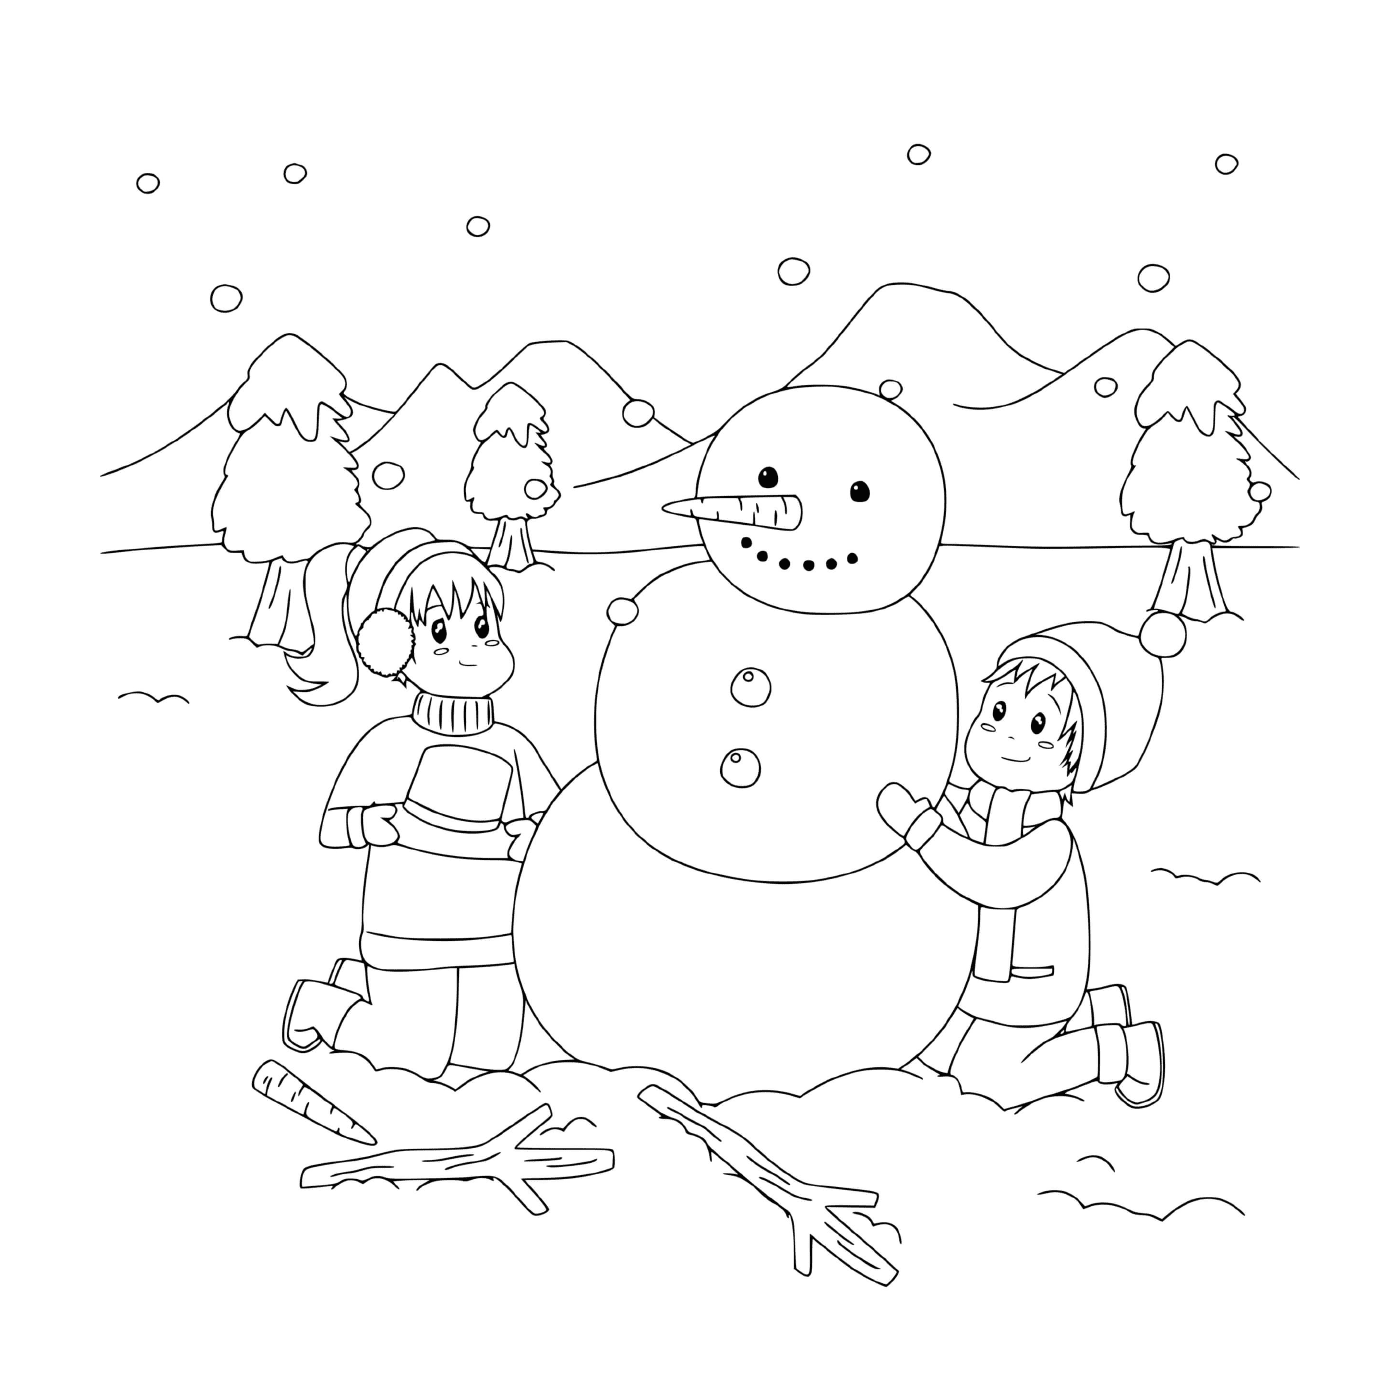  Kinder bauen einen Schneemann in einer verschneiten Landschaft 